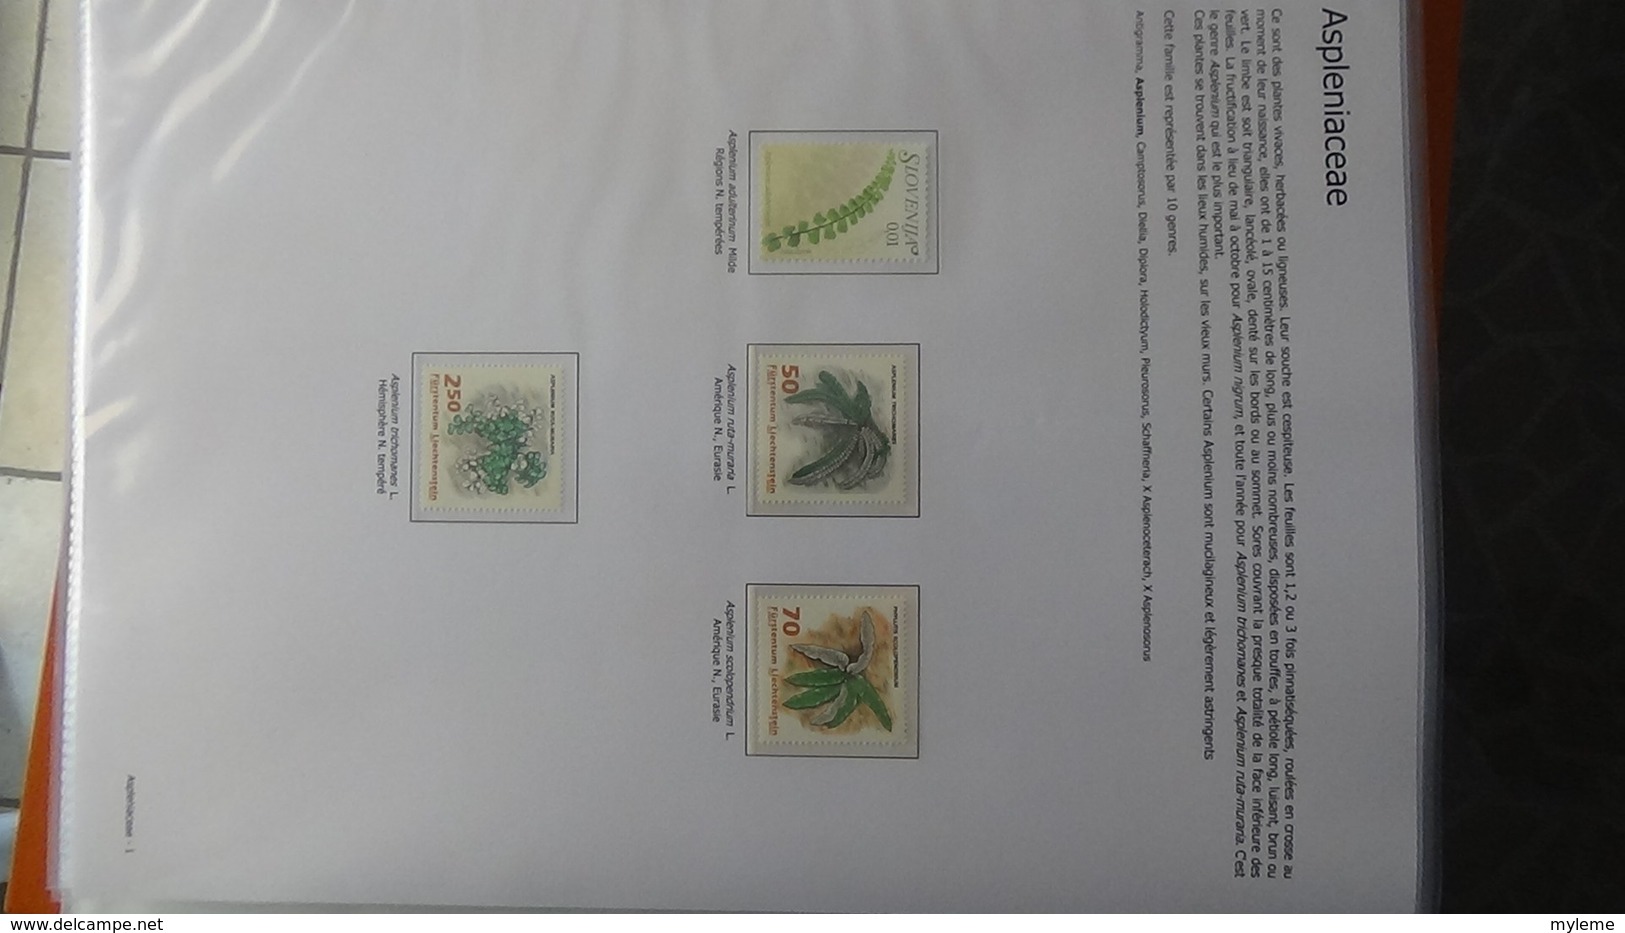 Dispersion d'une grosse collection thématique dont les Plantes Gymnospermes/Mousses/ Fougères . A saisir !!!